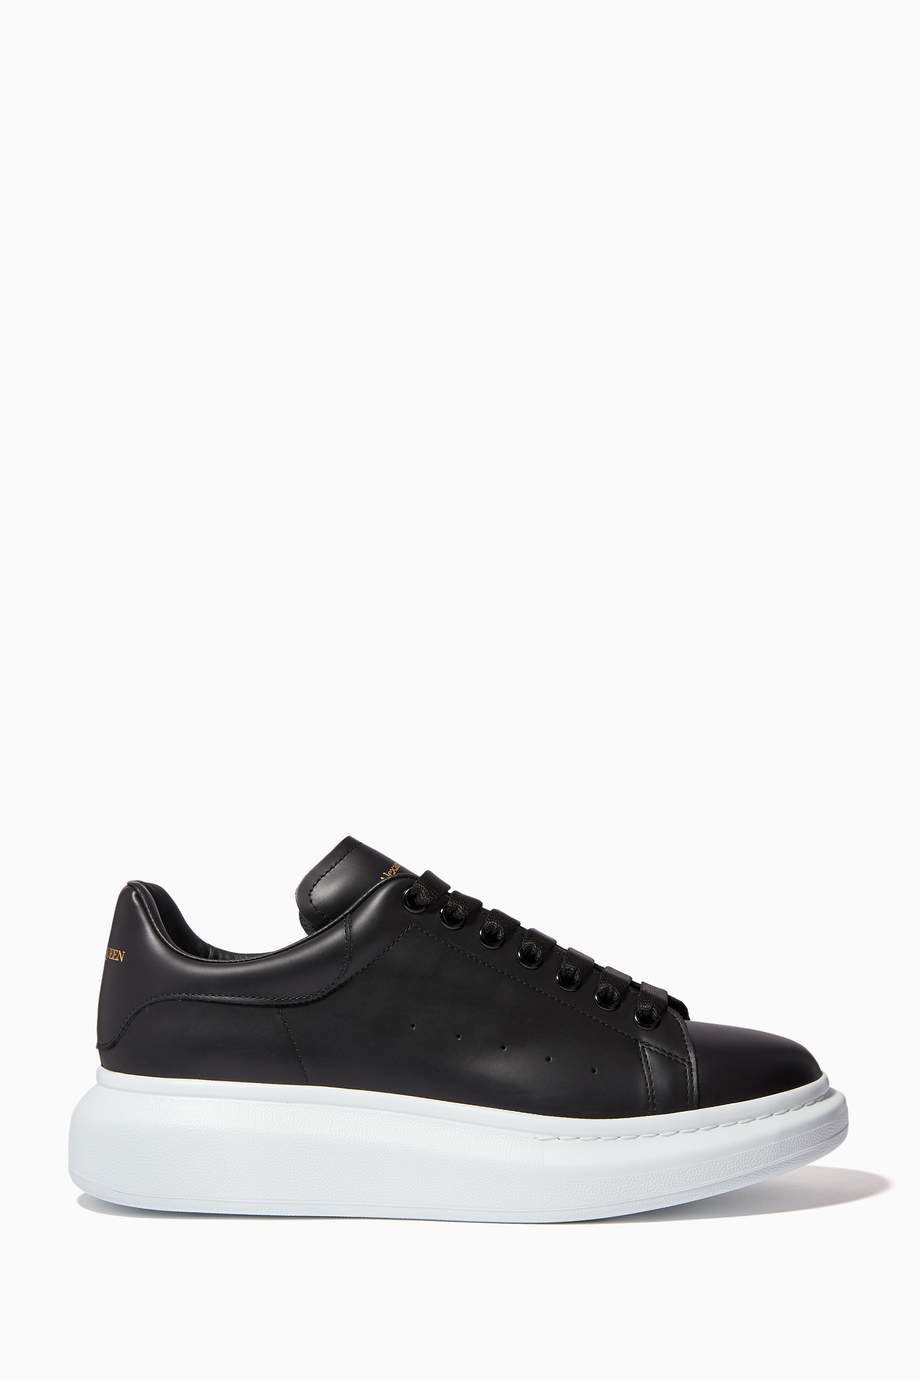 Shop Alexander McQueen Black Oversized Leather Sneakers for Men ...